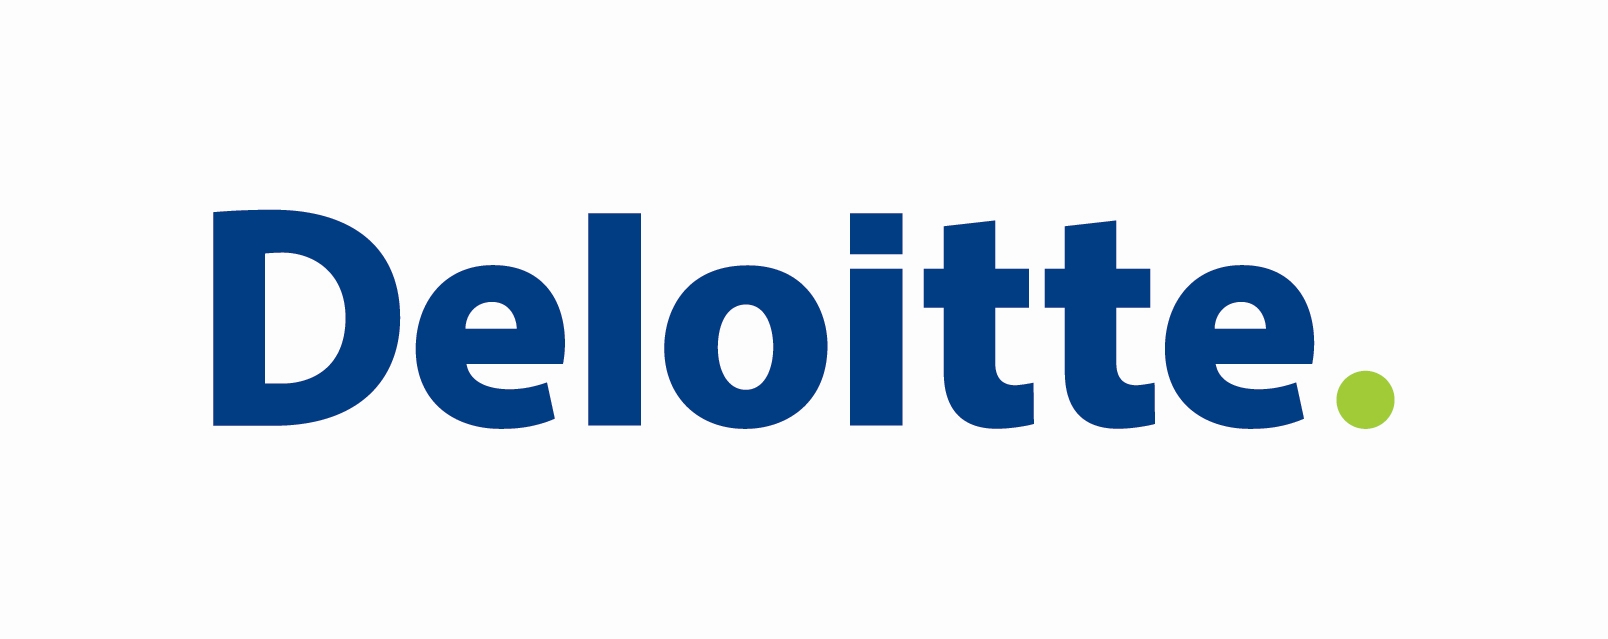 Deloitte-logo.jpg